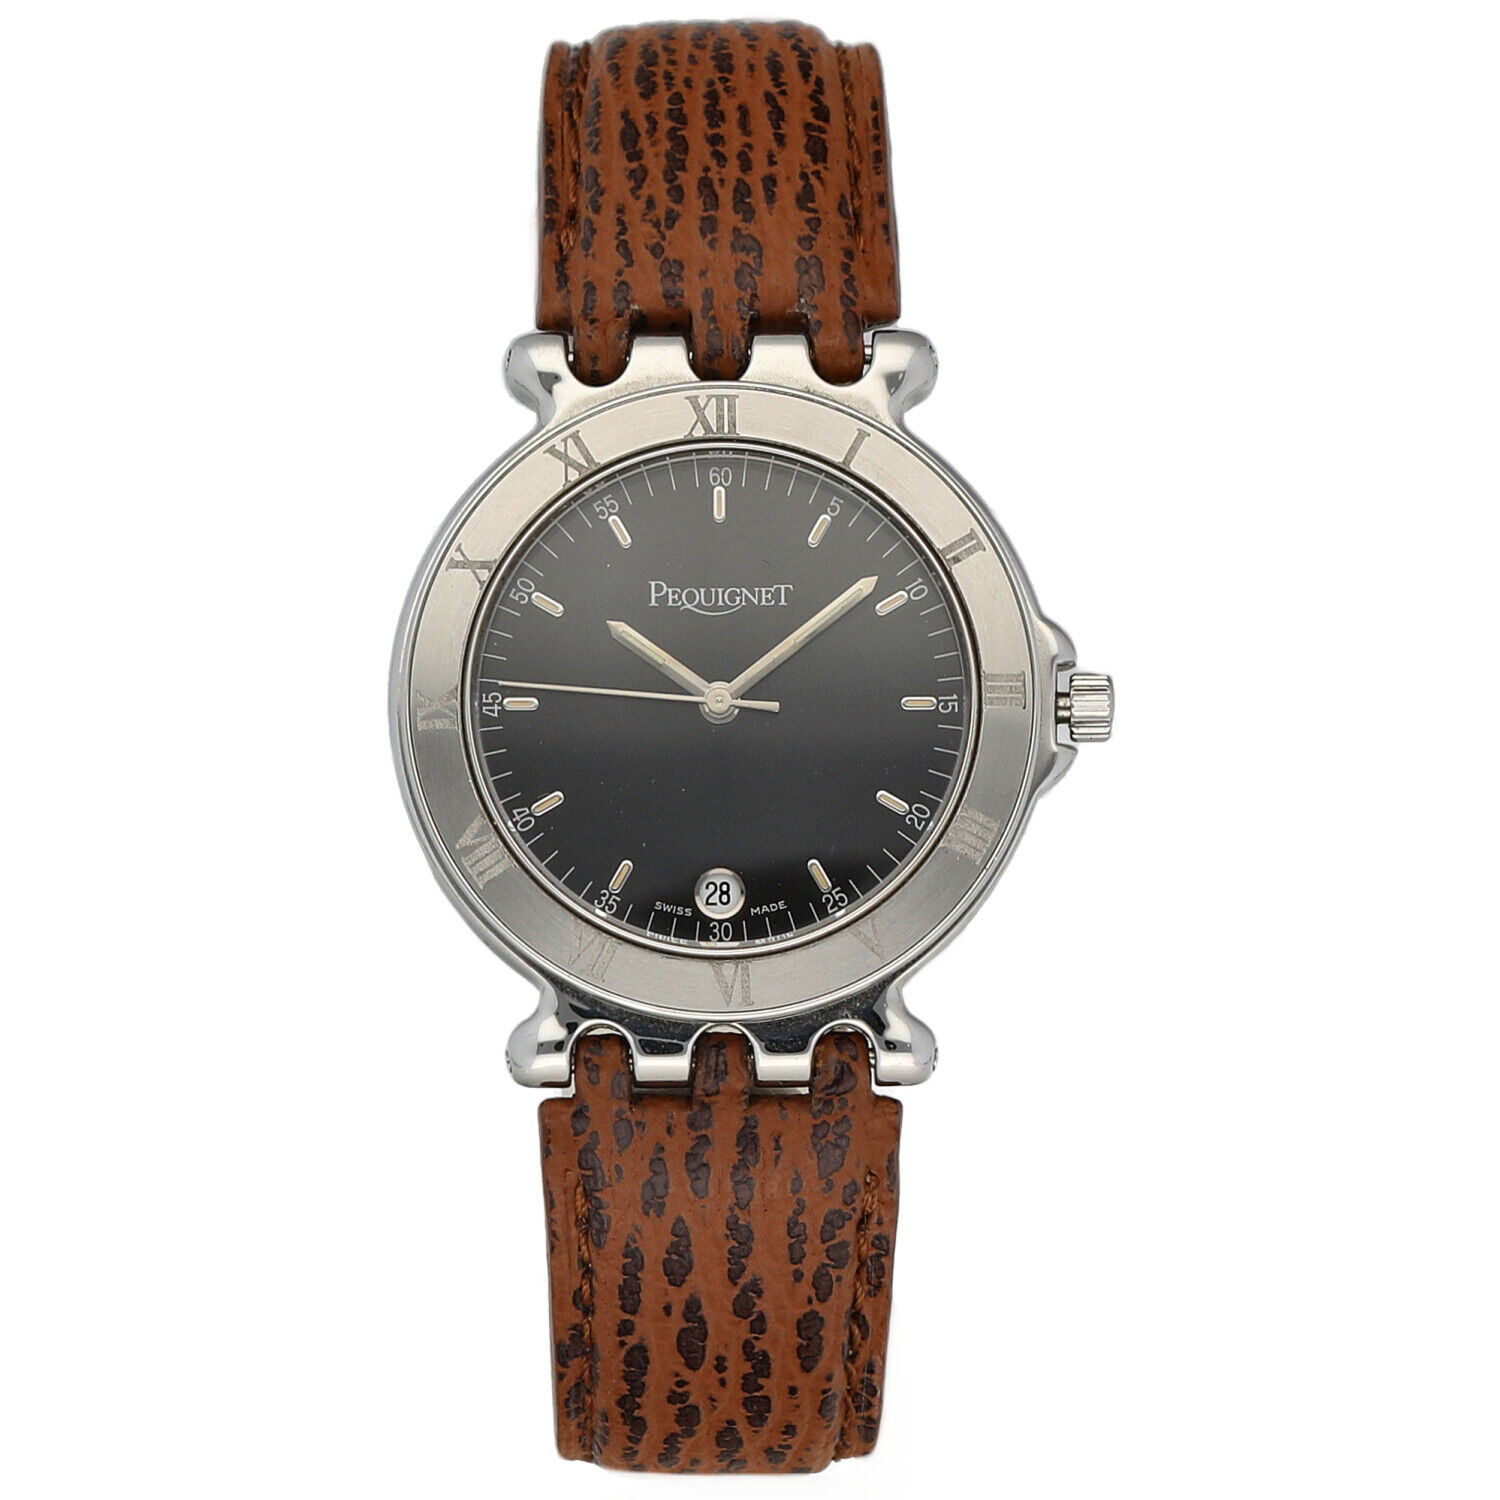 Pequignet-8816313-Round-Black-Dial-33mm-Brown-Leather-Swiss-Quartz-Wrist-Watch-115233541155